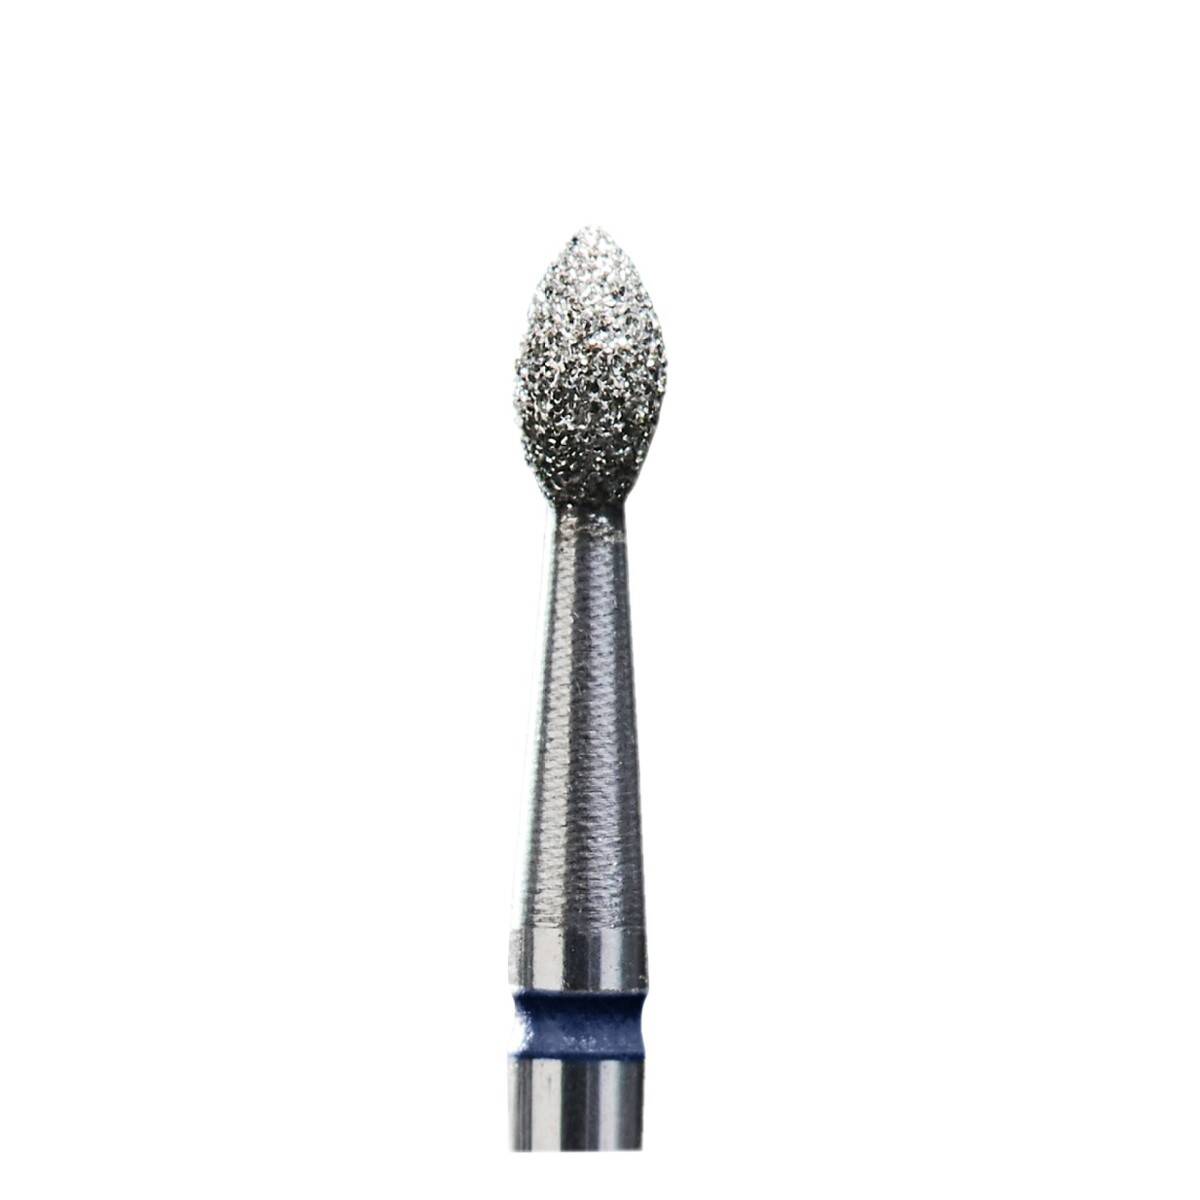 Diamond cutter FA60B025/4.5K olive sharp 2.5mm/4.5 (FA60B025/4.5K)